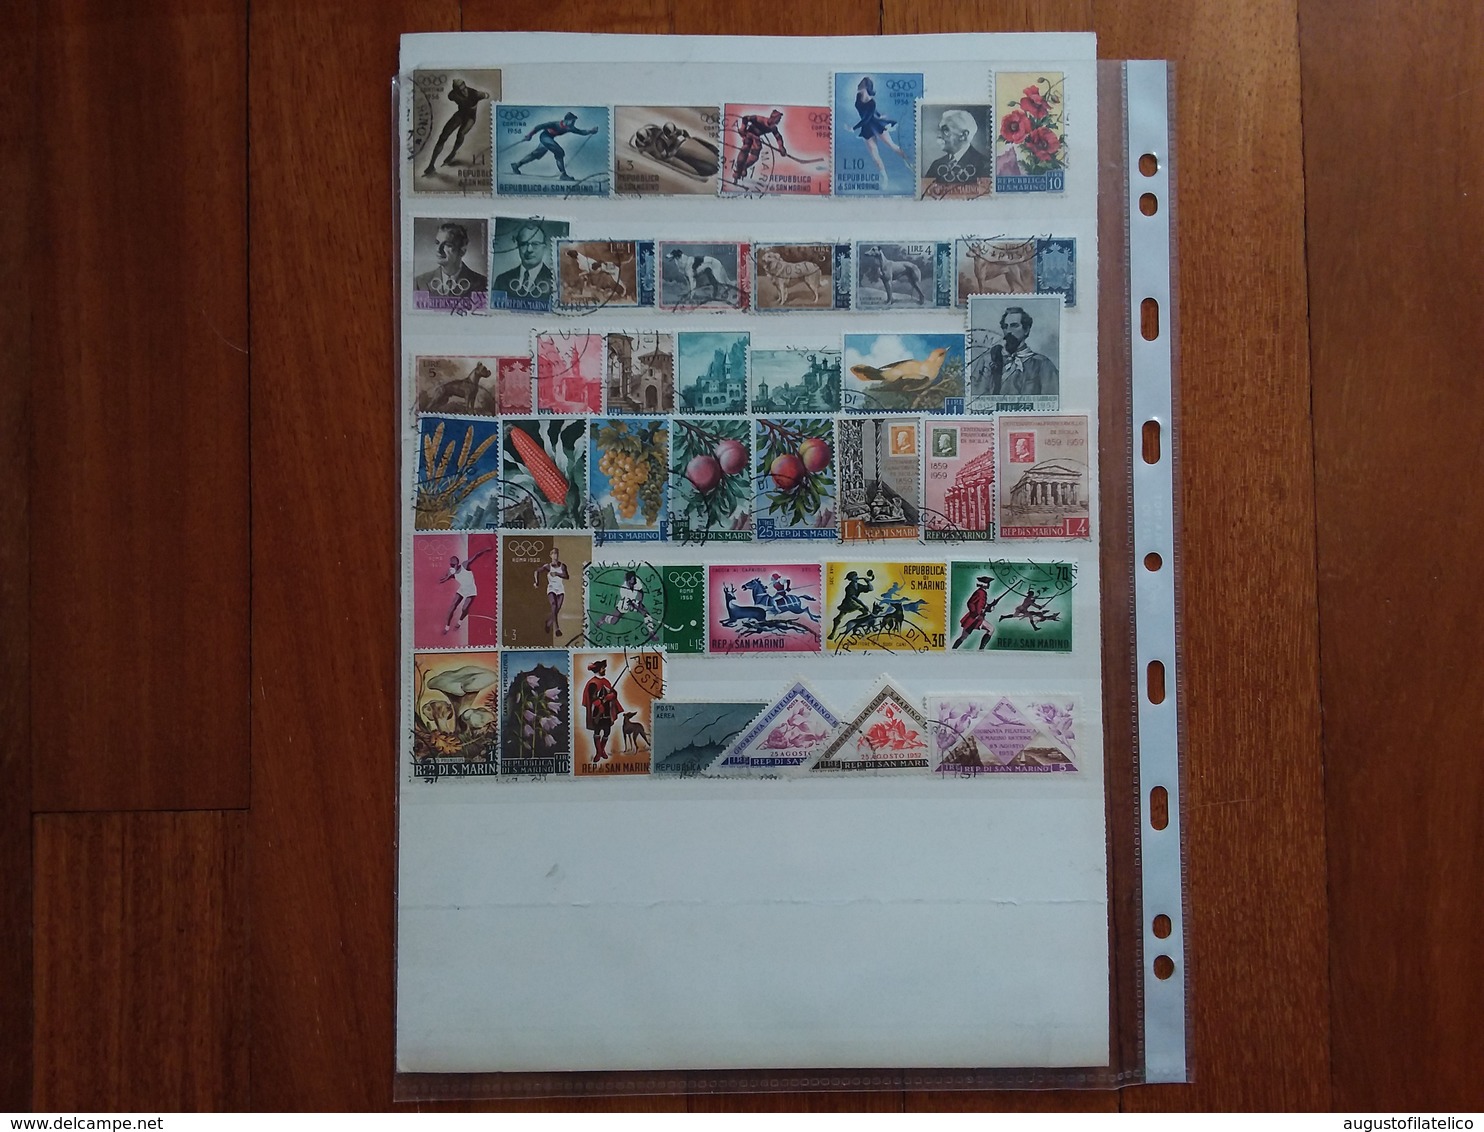 SAN MARINO - Lotto 100 Francobolli Differenti Anni '40/'60 Timbrati + Spese Postali - Used Stamps